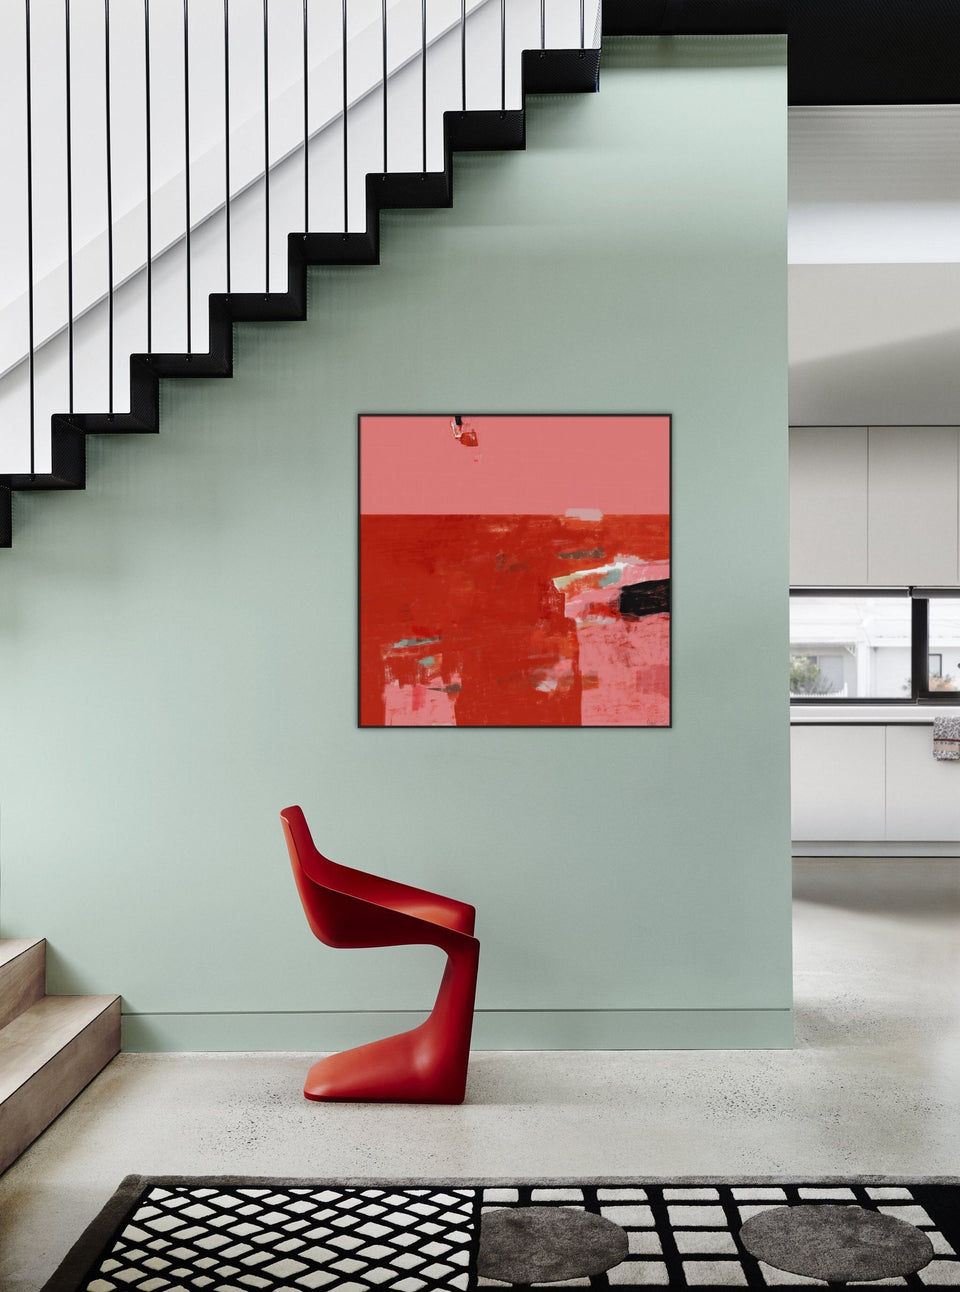  Emotion partagée - peinture abstraite rouge rose - œuvres d'art  artiste peintre Octave Pixel  galerie TACT Art abstrait & contemporain